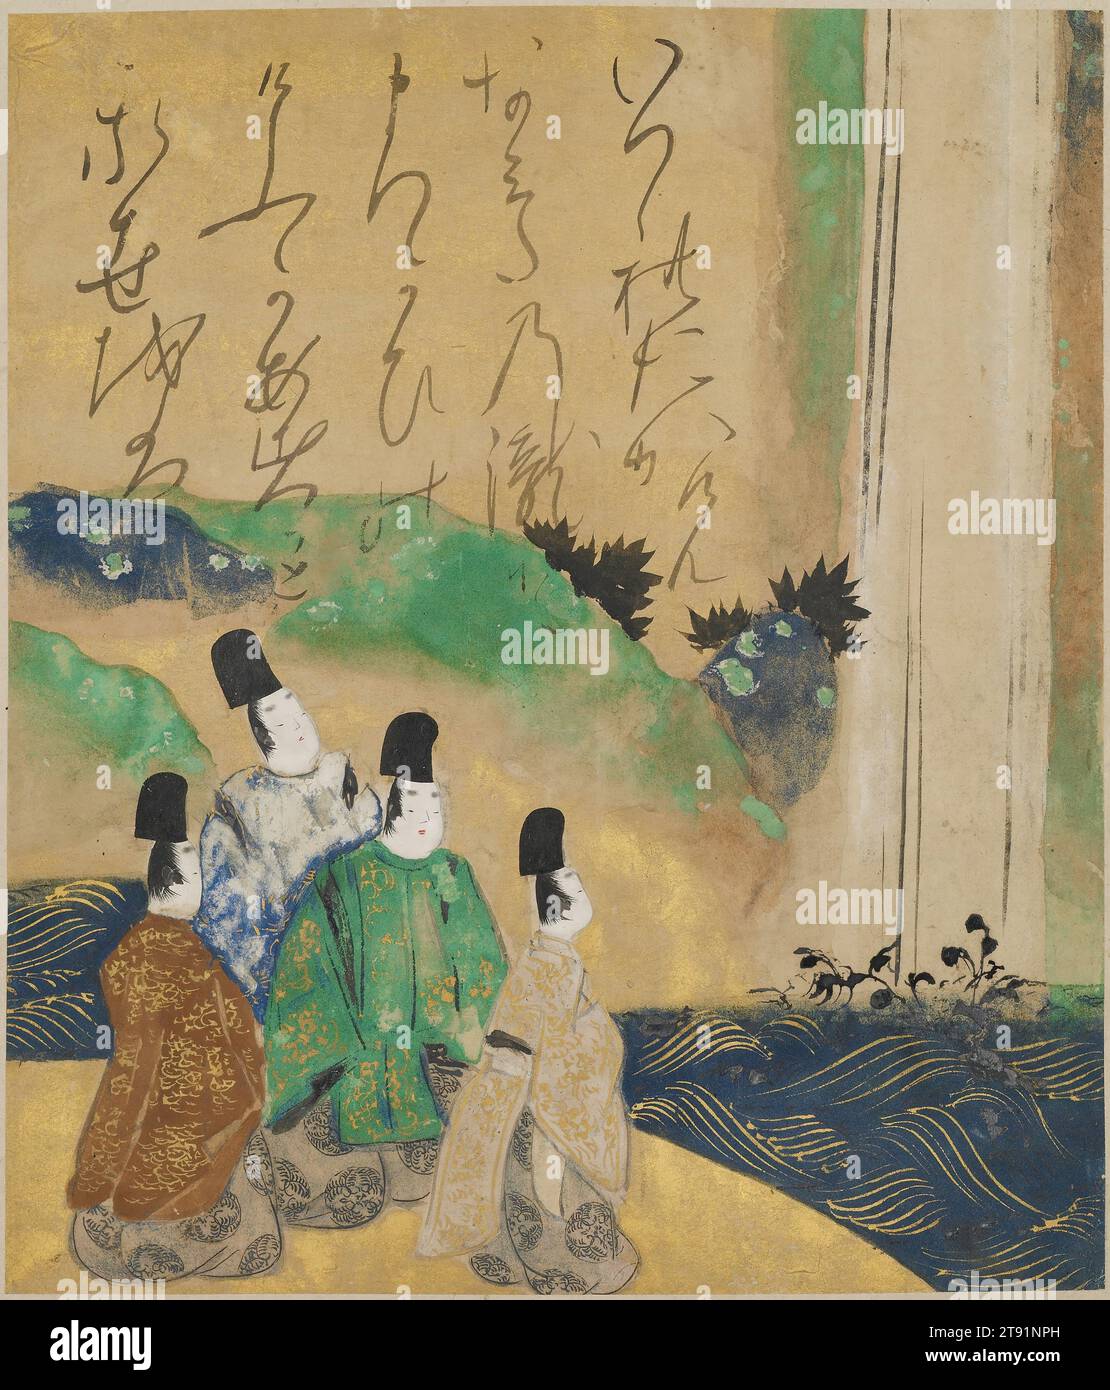 Noblemen Viewing the Nunobiki Waterfall, épisode 87 des Contes d'ISE, première moitié du 17e siècle, attribué à Tawaraya Sōtatsu, Japonais, mort vers 1640, 9 7/16 × 8 1/4 po. (23,97 × 20,96 cm) (image)52 1/4 × 15 7/8 po (132,72 × 40,32 cm) (montage)17 3/4 × 1 pouces (45,09 × 2,54 cm) (partie objet, rouleau inférieur), encre et couleur sur papier, Japon, 17e siècle, Tawaraya Sōtatsu, l'un des fondateurs de l'école Rinpa au début du 17e siècle, s'inspire de thèmes littéraires et de styles de peinture du passé classique japonais. Cet album Leaf illustre une scène de The Tales of ISE Banque D'Images